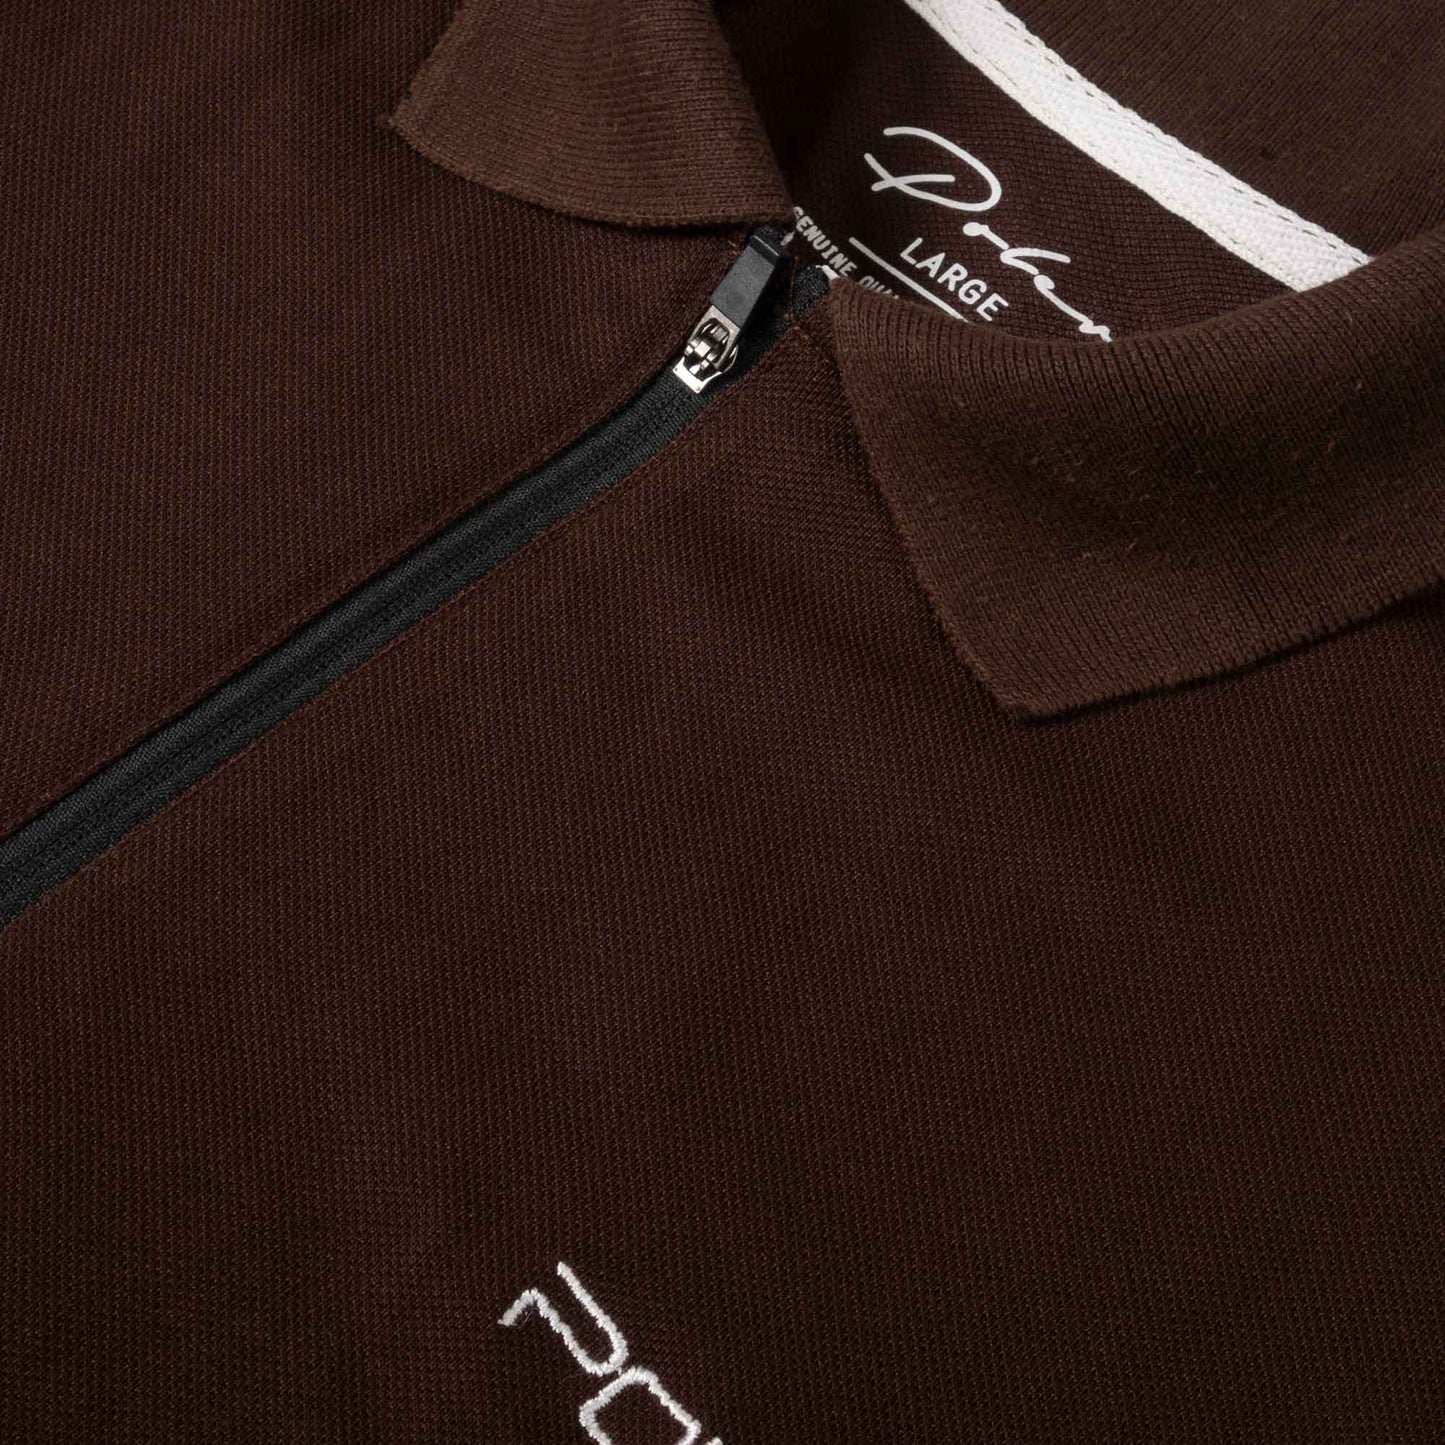 Poler Men's Quarter Zipper Poler Embroidered Polo Shirt Men's Polo Shirt IBT 